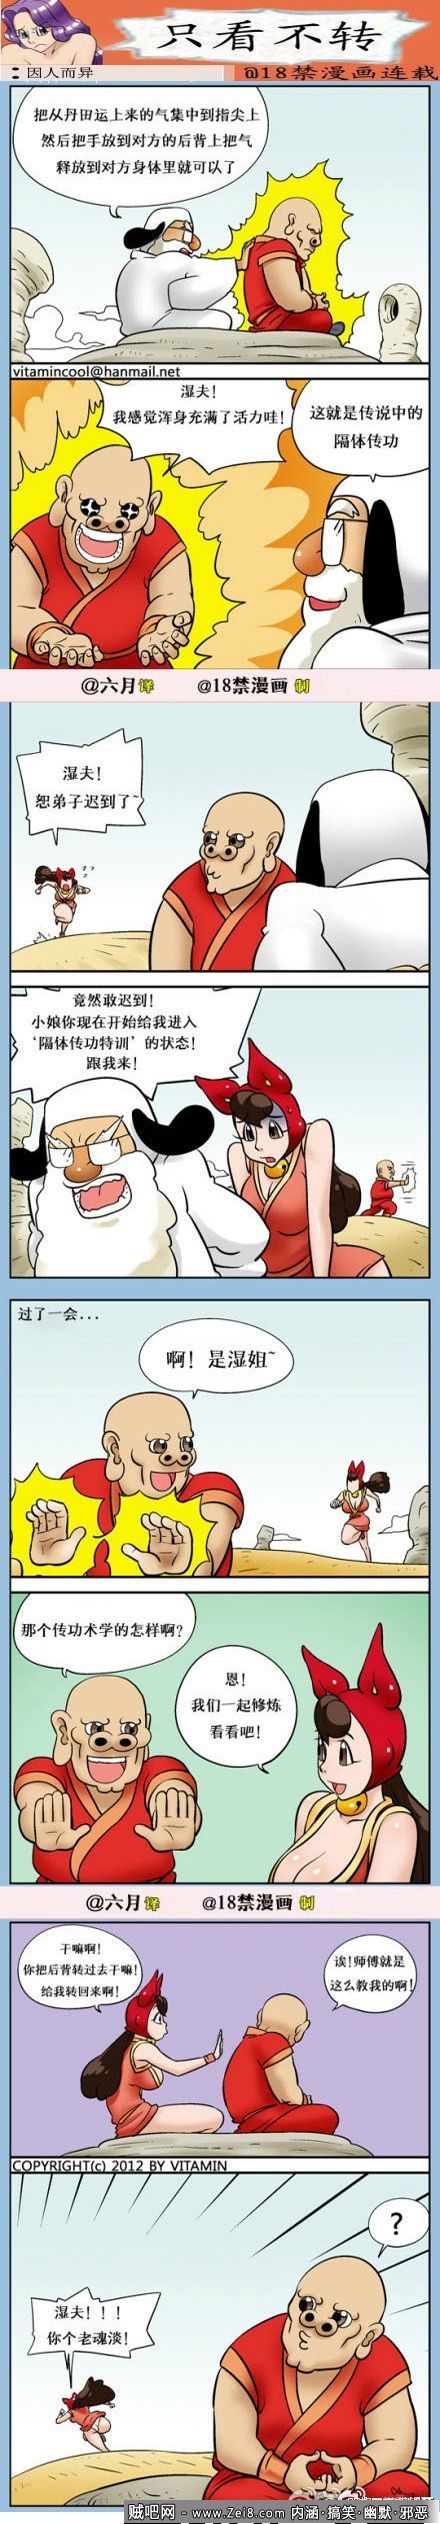 [韩国大师漫画]：邪恶的师父